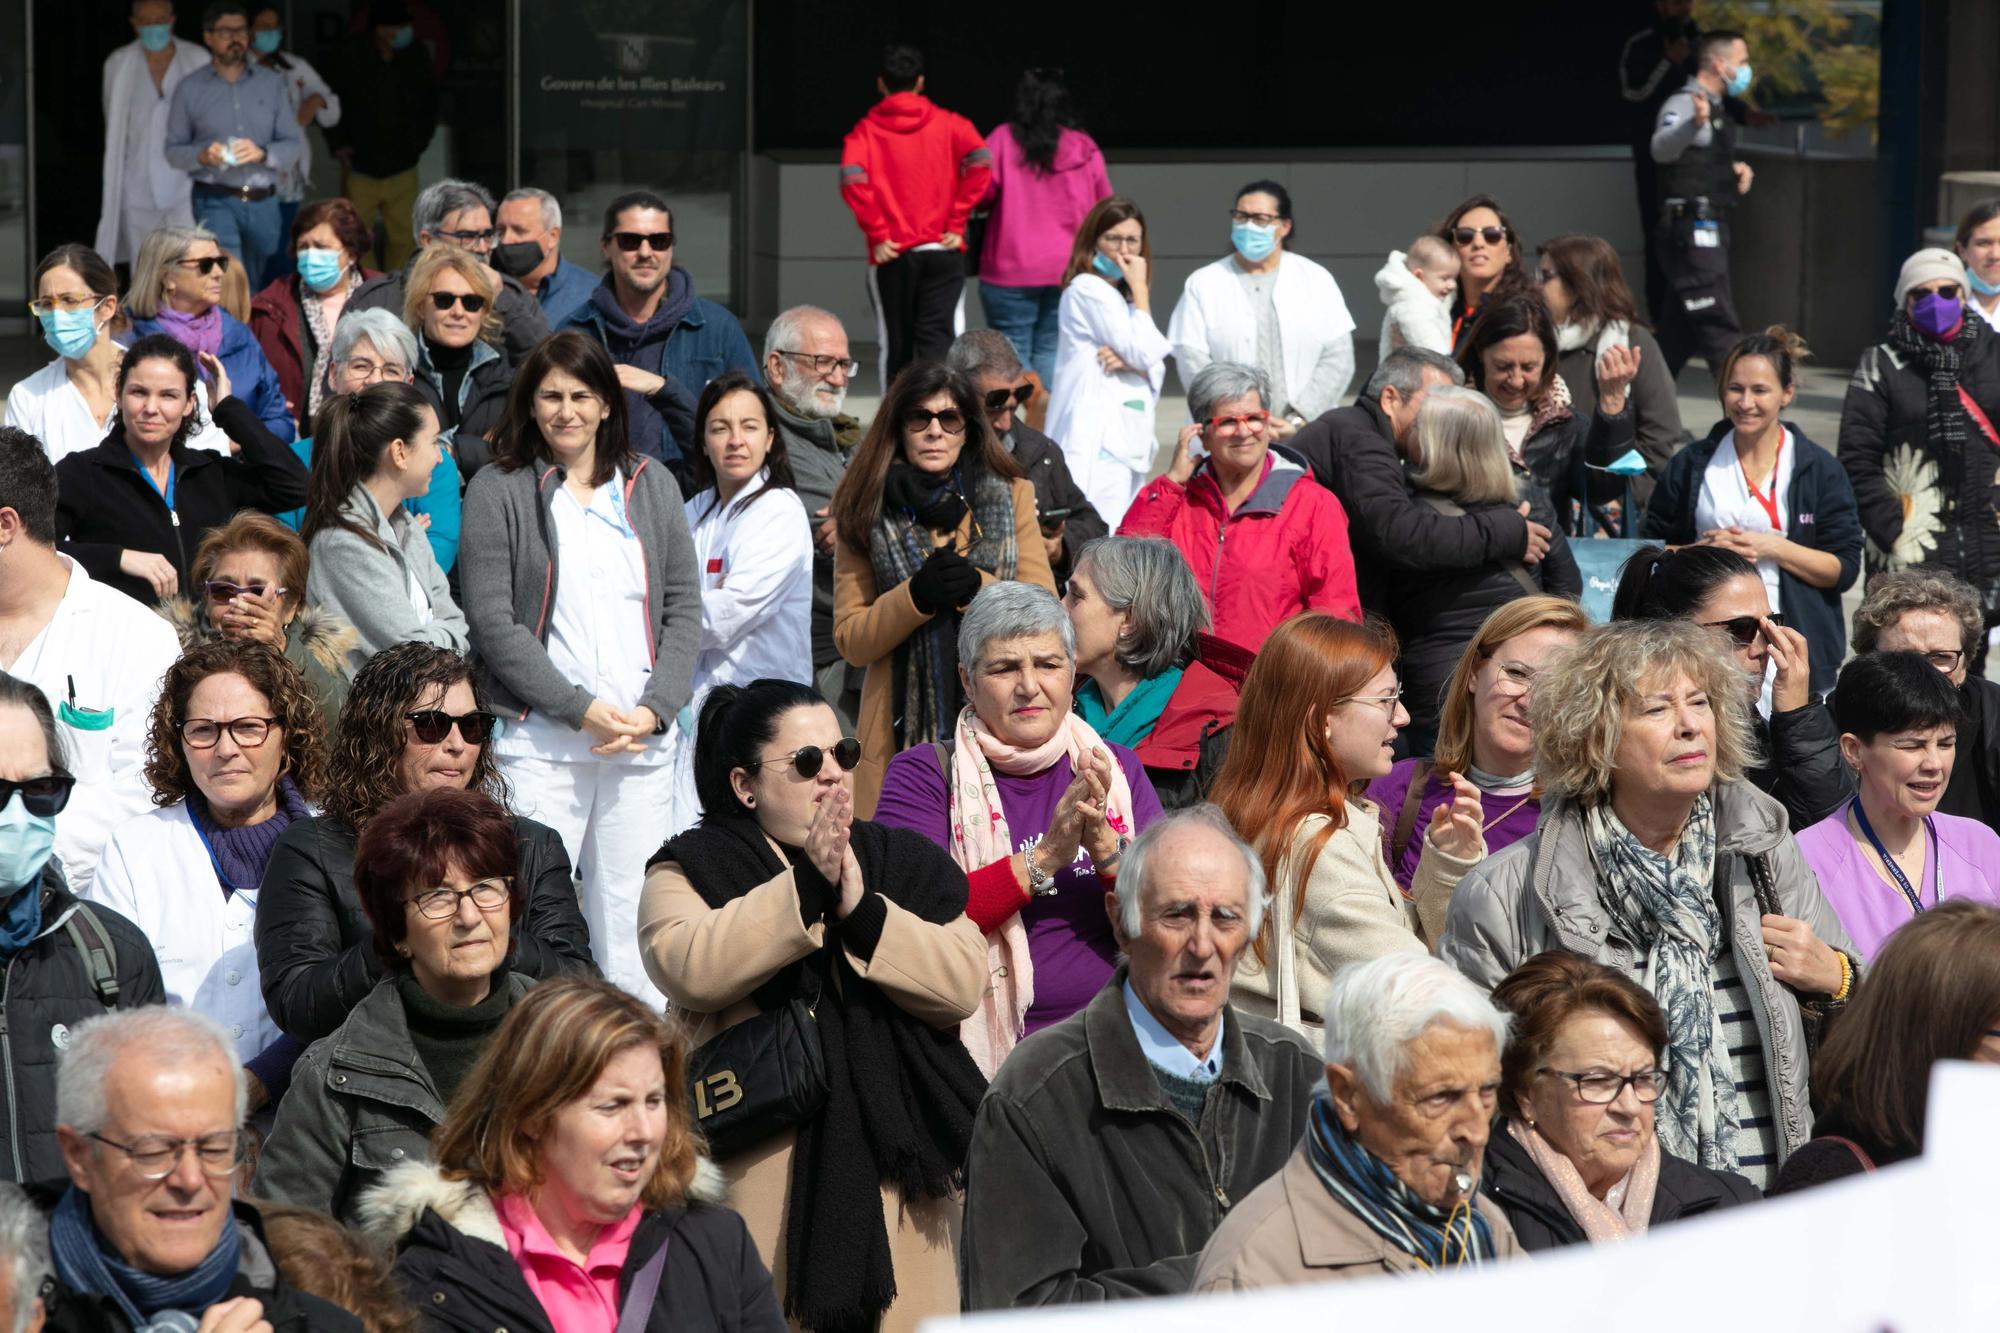 Galería de imágenes de la concentración por la falta de médicos en Ibiza